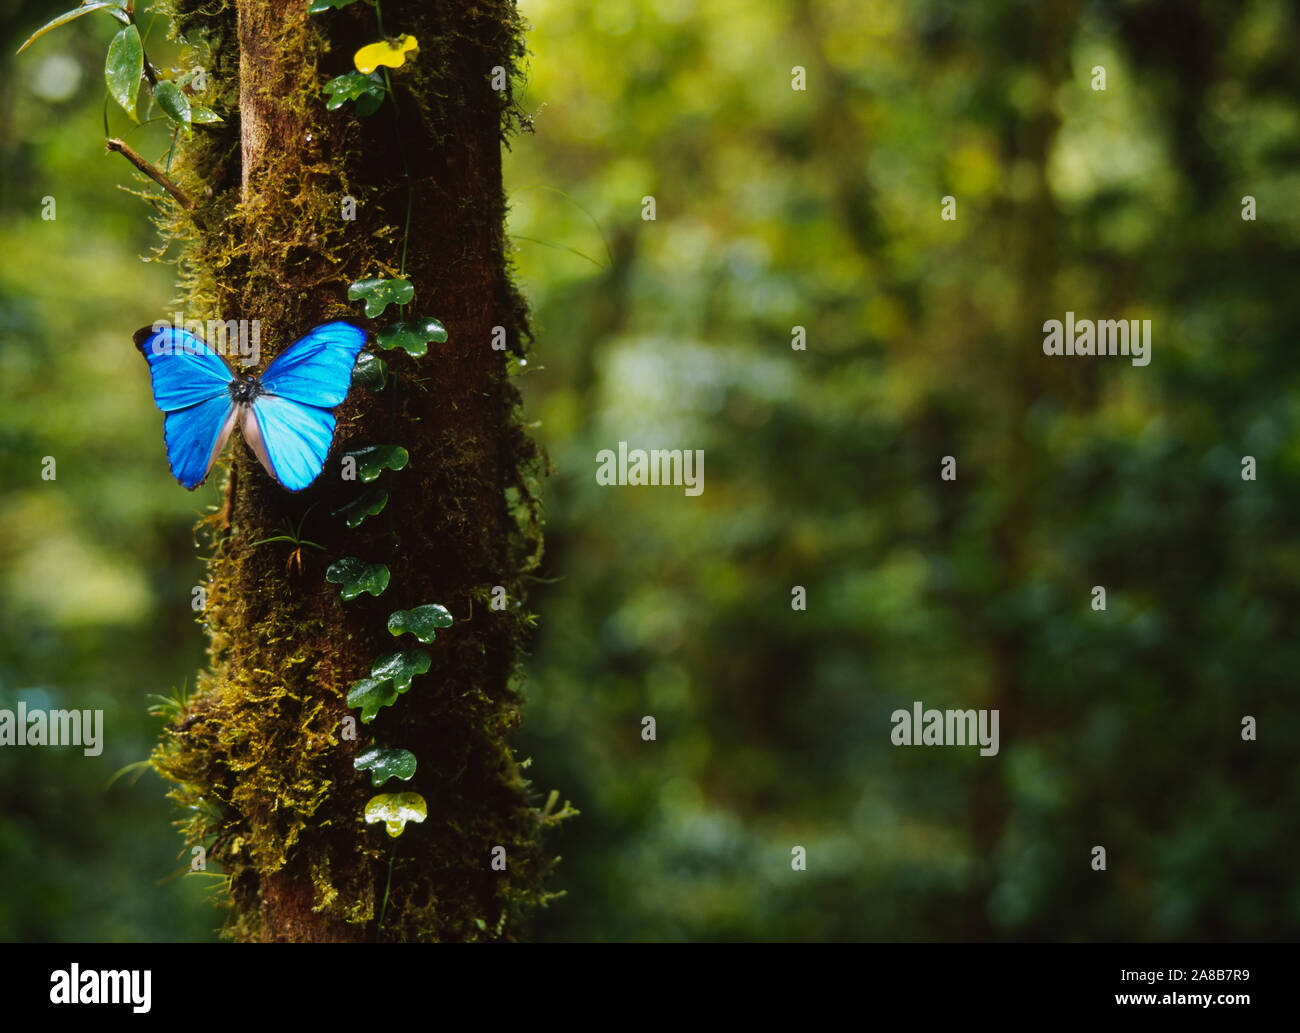 Nahaufnahme eines blauen Morpho Schmetterling (Morpho menelaus) auf einem Baum, Monteverde Cloud Forest Reserve, Puntarenas, Costa Rica Stockfoto